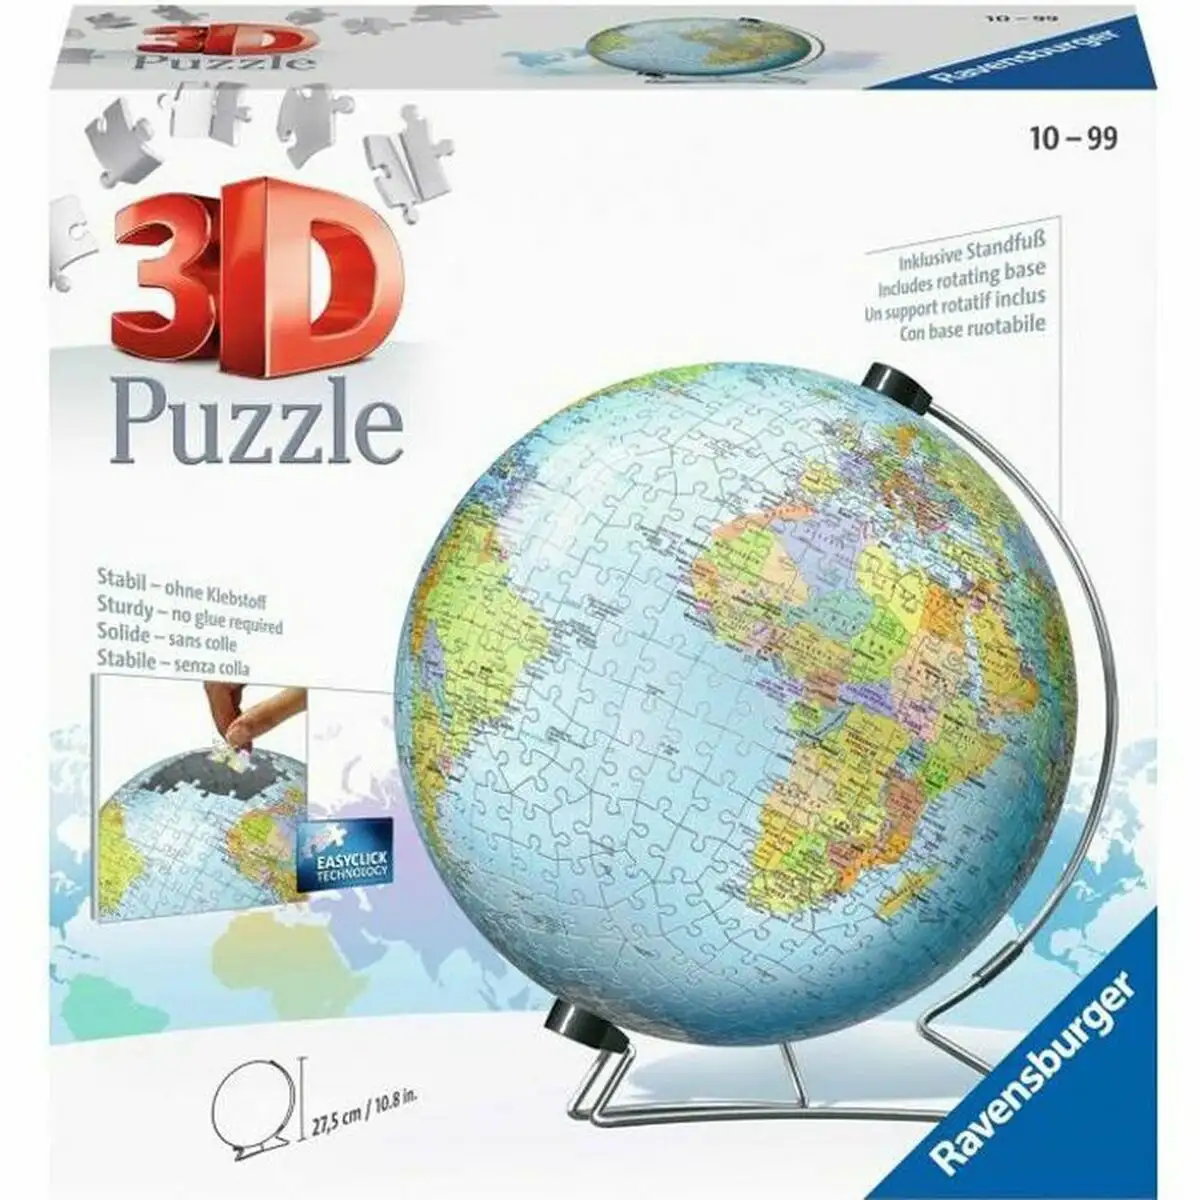 Puzzle 3d ravensburger single color globe unique 540 pieces_2281. DIAYTAR SENEGAL - Là où Chaque Achat a du Sens. Explorez notre gamme et choisissez des produits qui racontent une histoire, votre histoire.